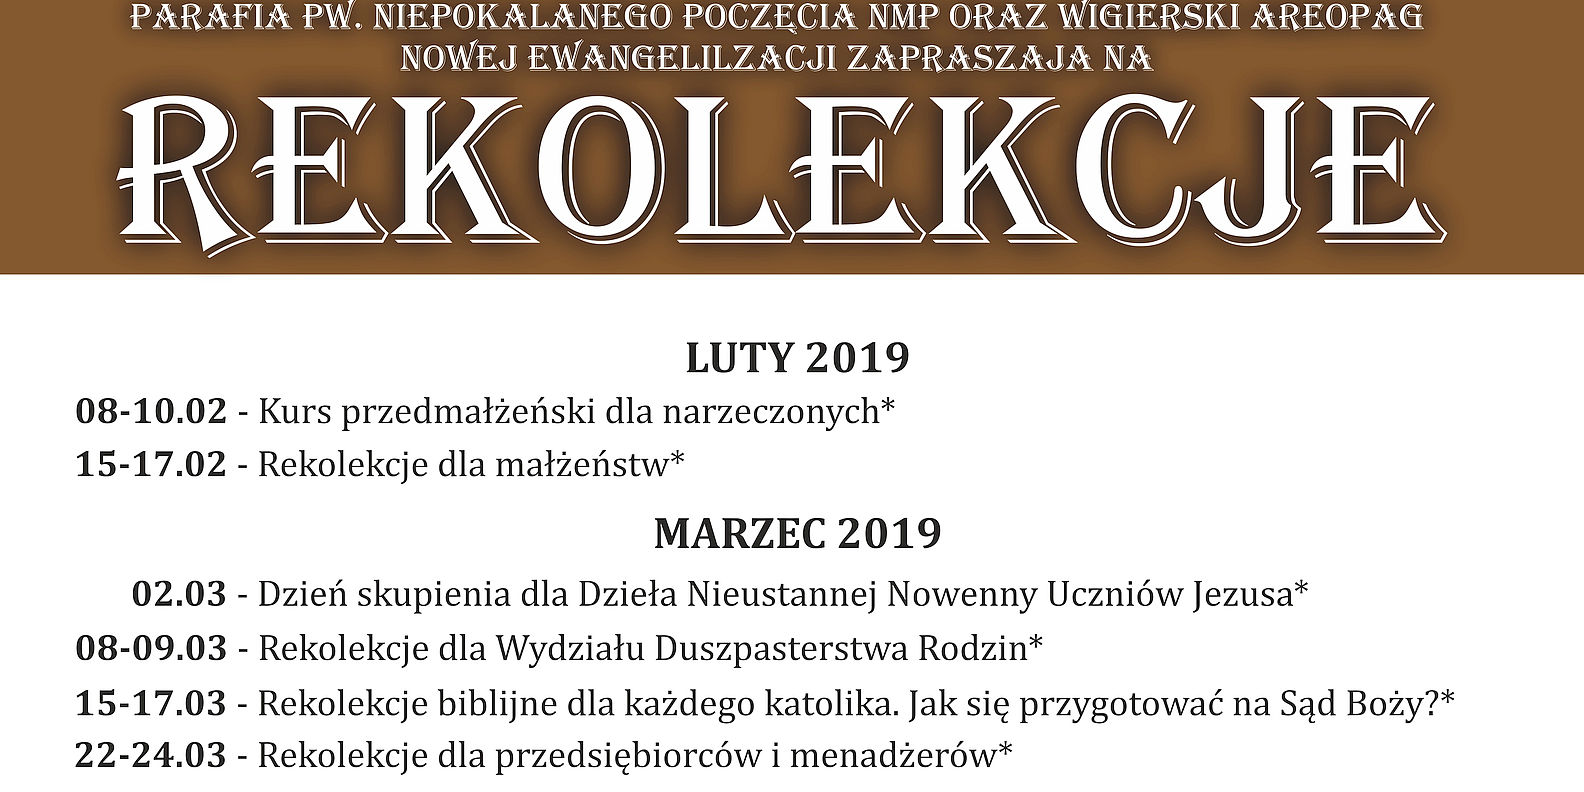 Rekolekcje w Pokamedulskim Klasztorze w Wigrach - Wiosna'19